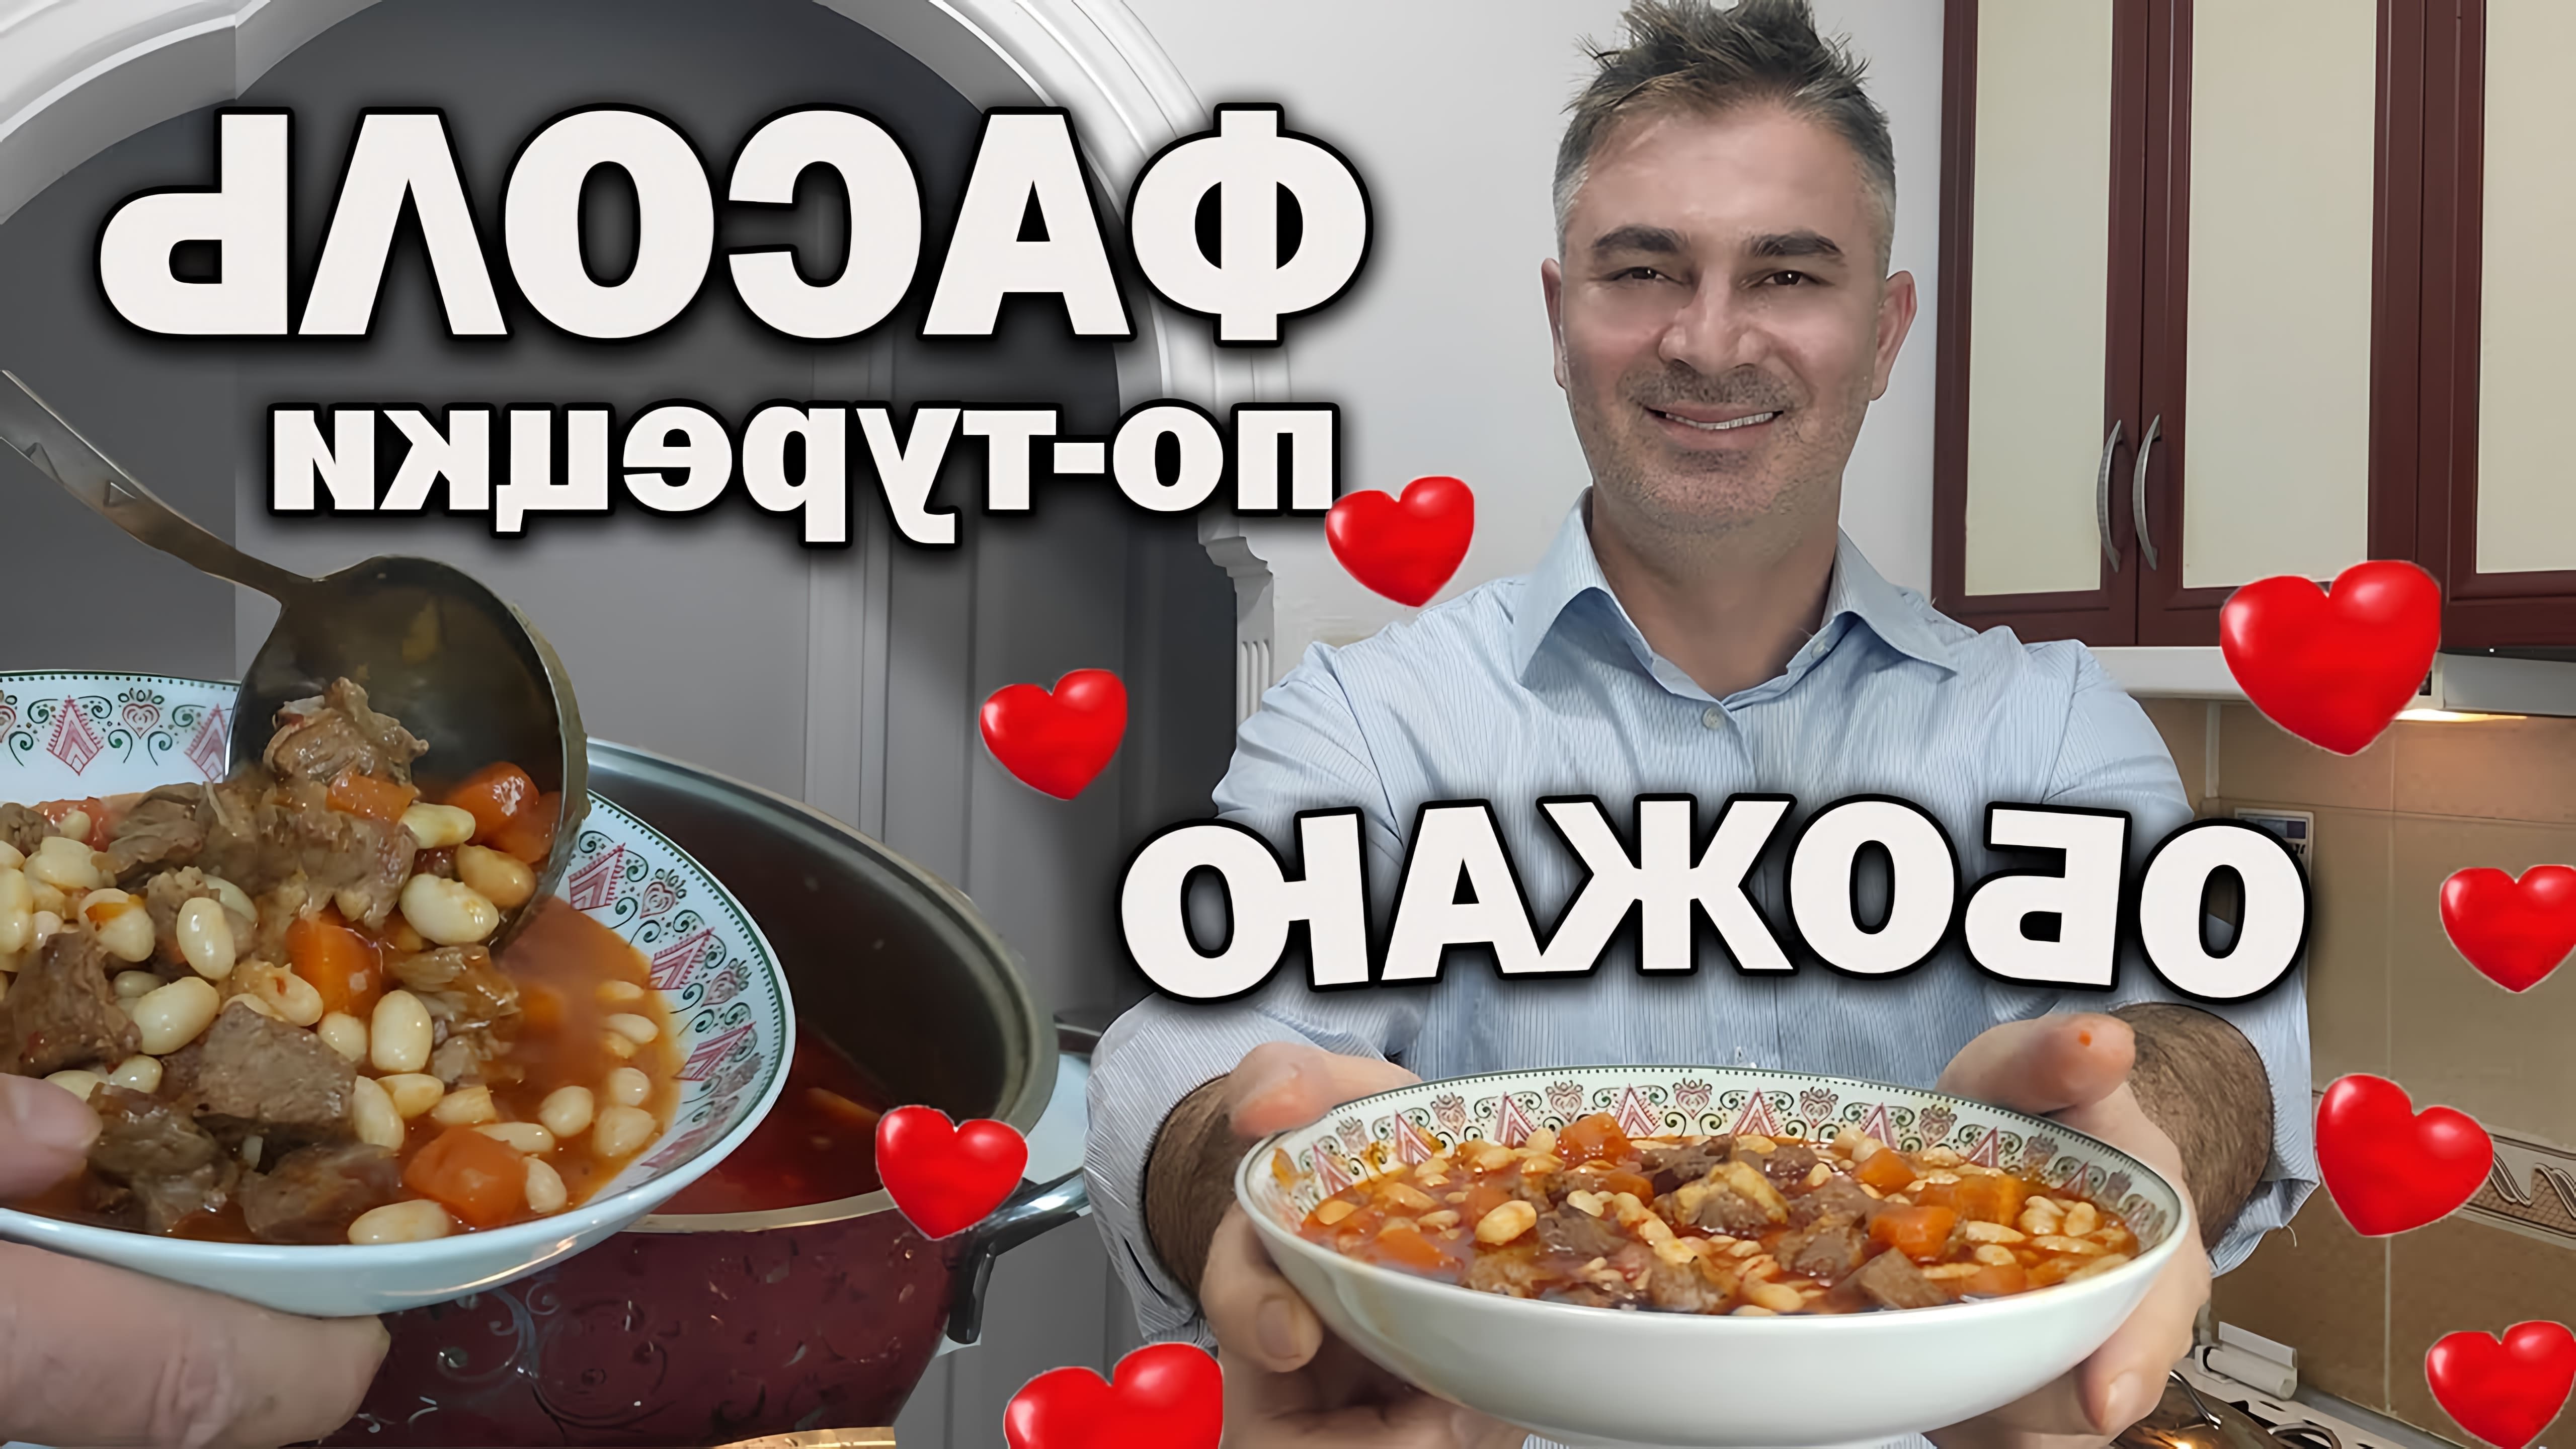 В этом видео турецкий повар показывает, как приготовить фасоль с мясом